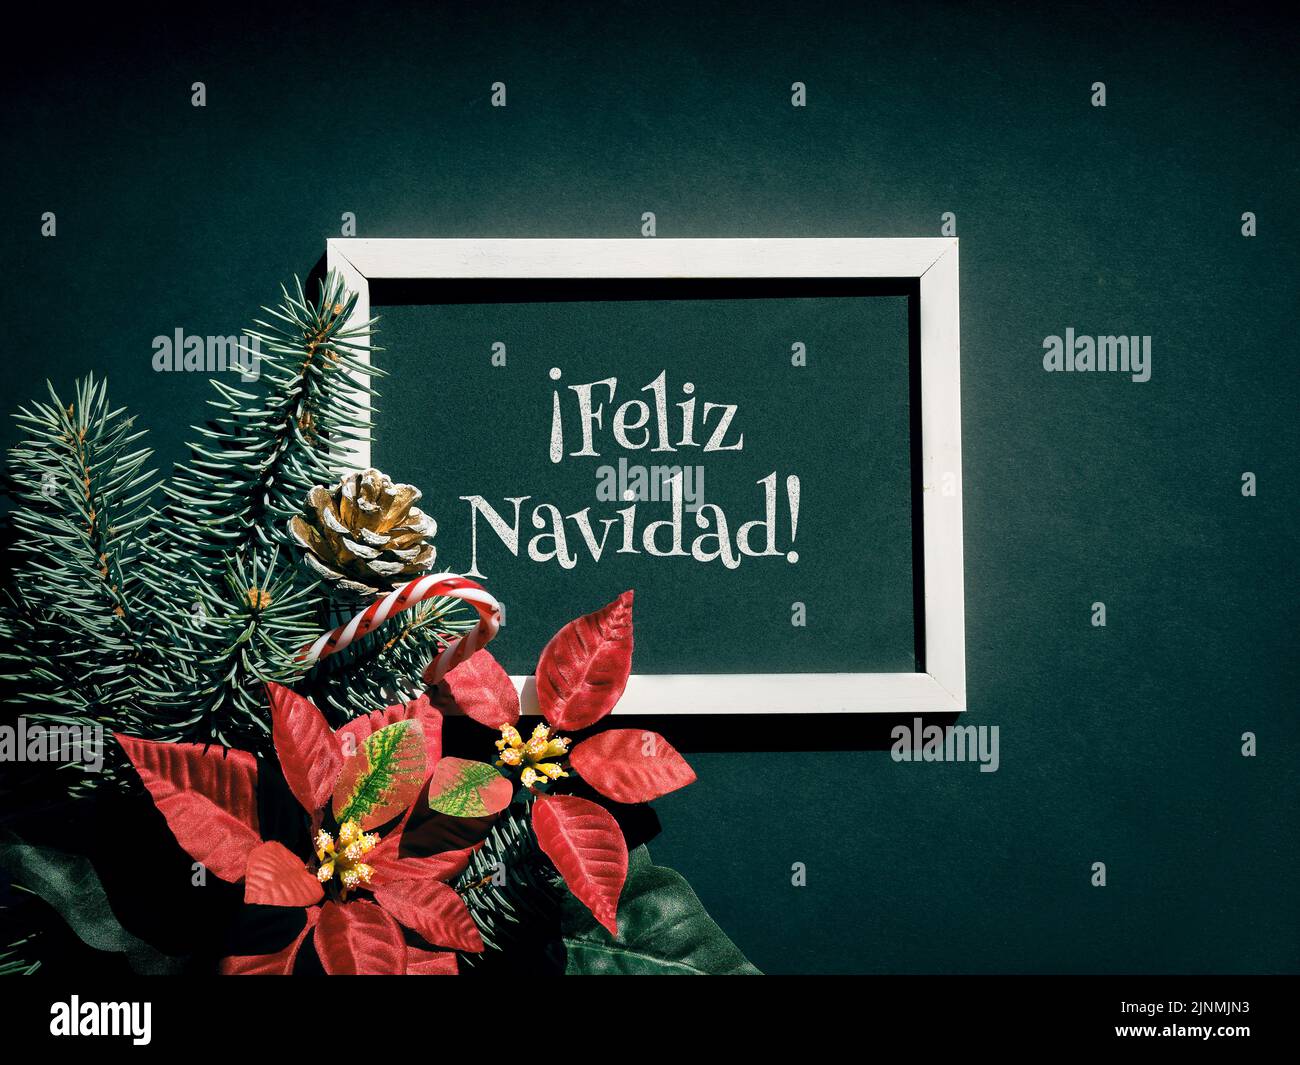 Feliz Navidad es Feliz Navidad en español. Navidad de fondo festivo en rojo, negro y verde oscuro. Foto de stock